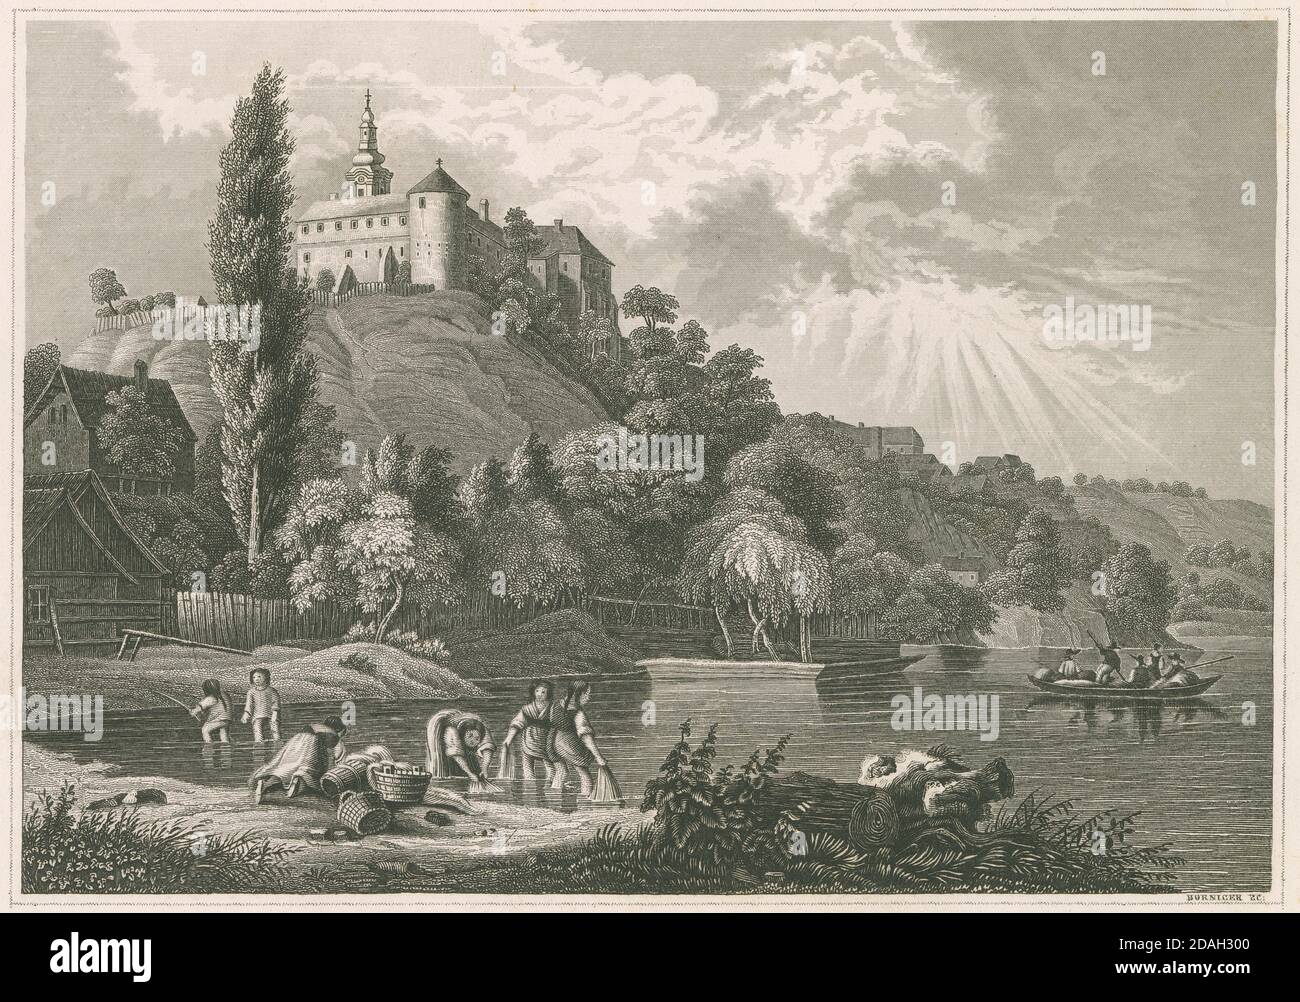 Antica incisione c1850, il Castello e Monastero di Illock, Ungheria. Probabilmente una vista romantica o fantastica della zona. FONTE: INCISIONE ORIGINALE Foto Stock